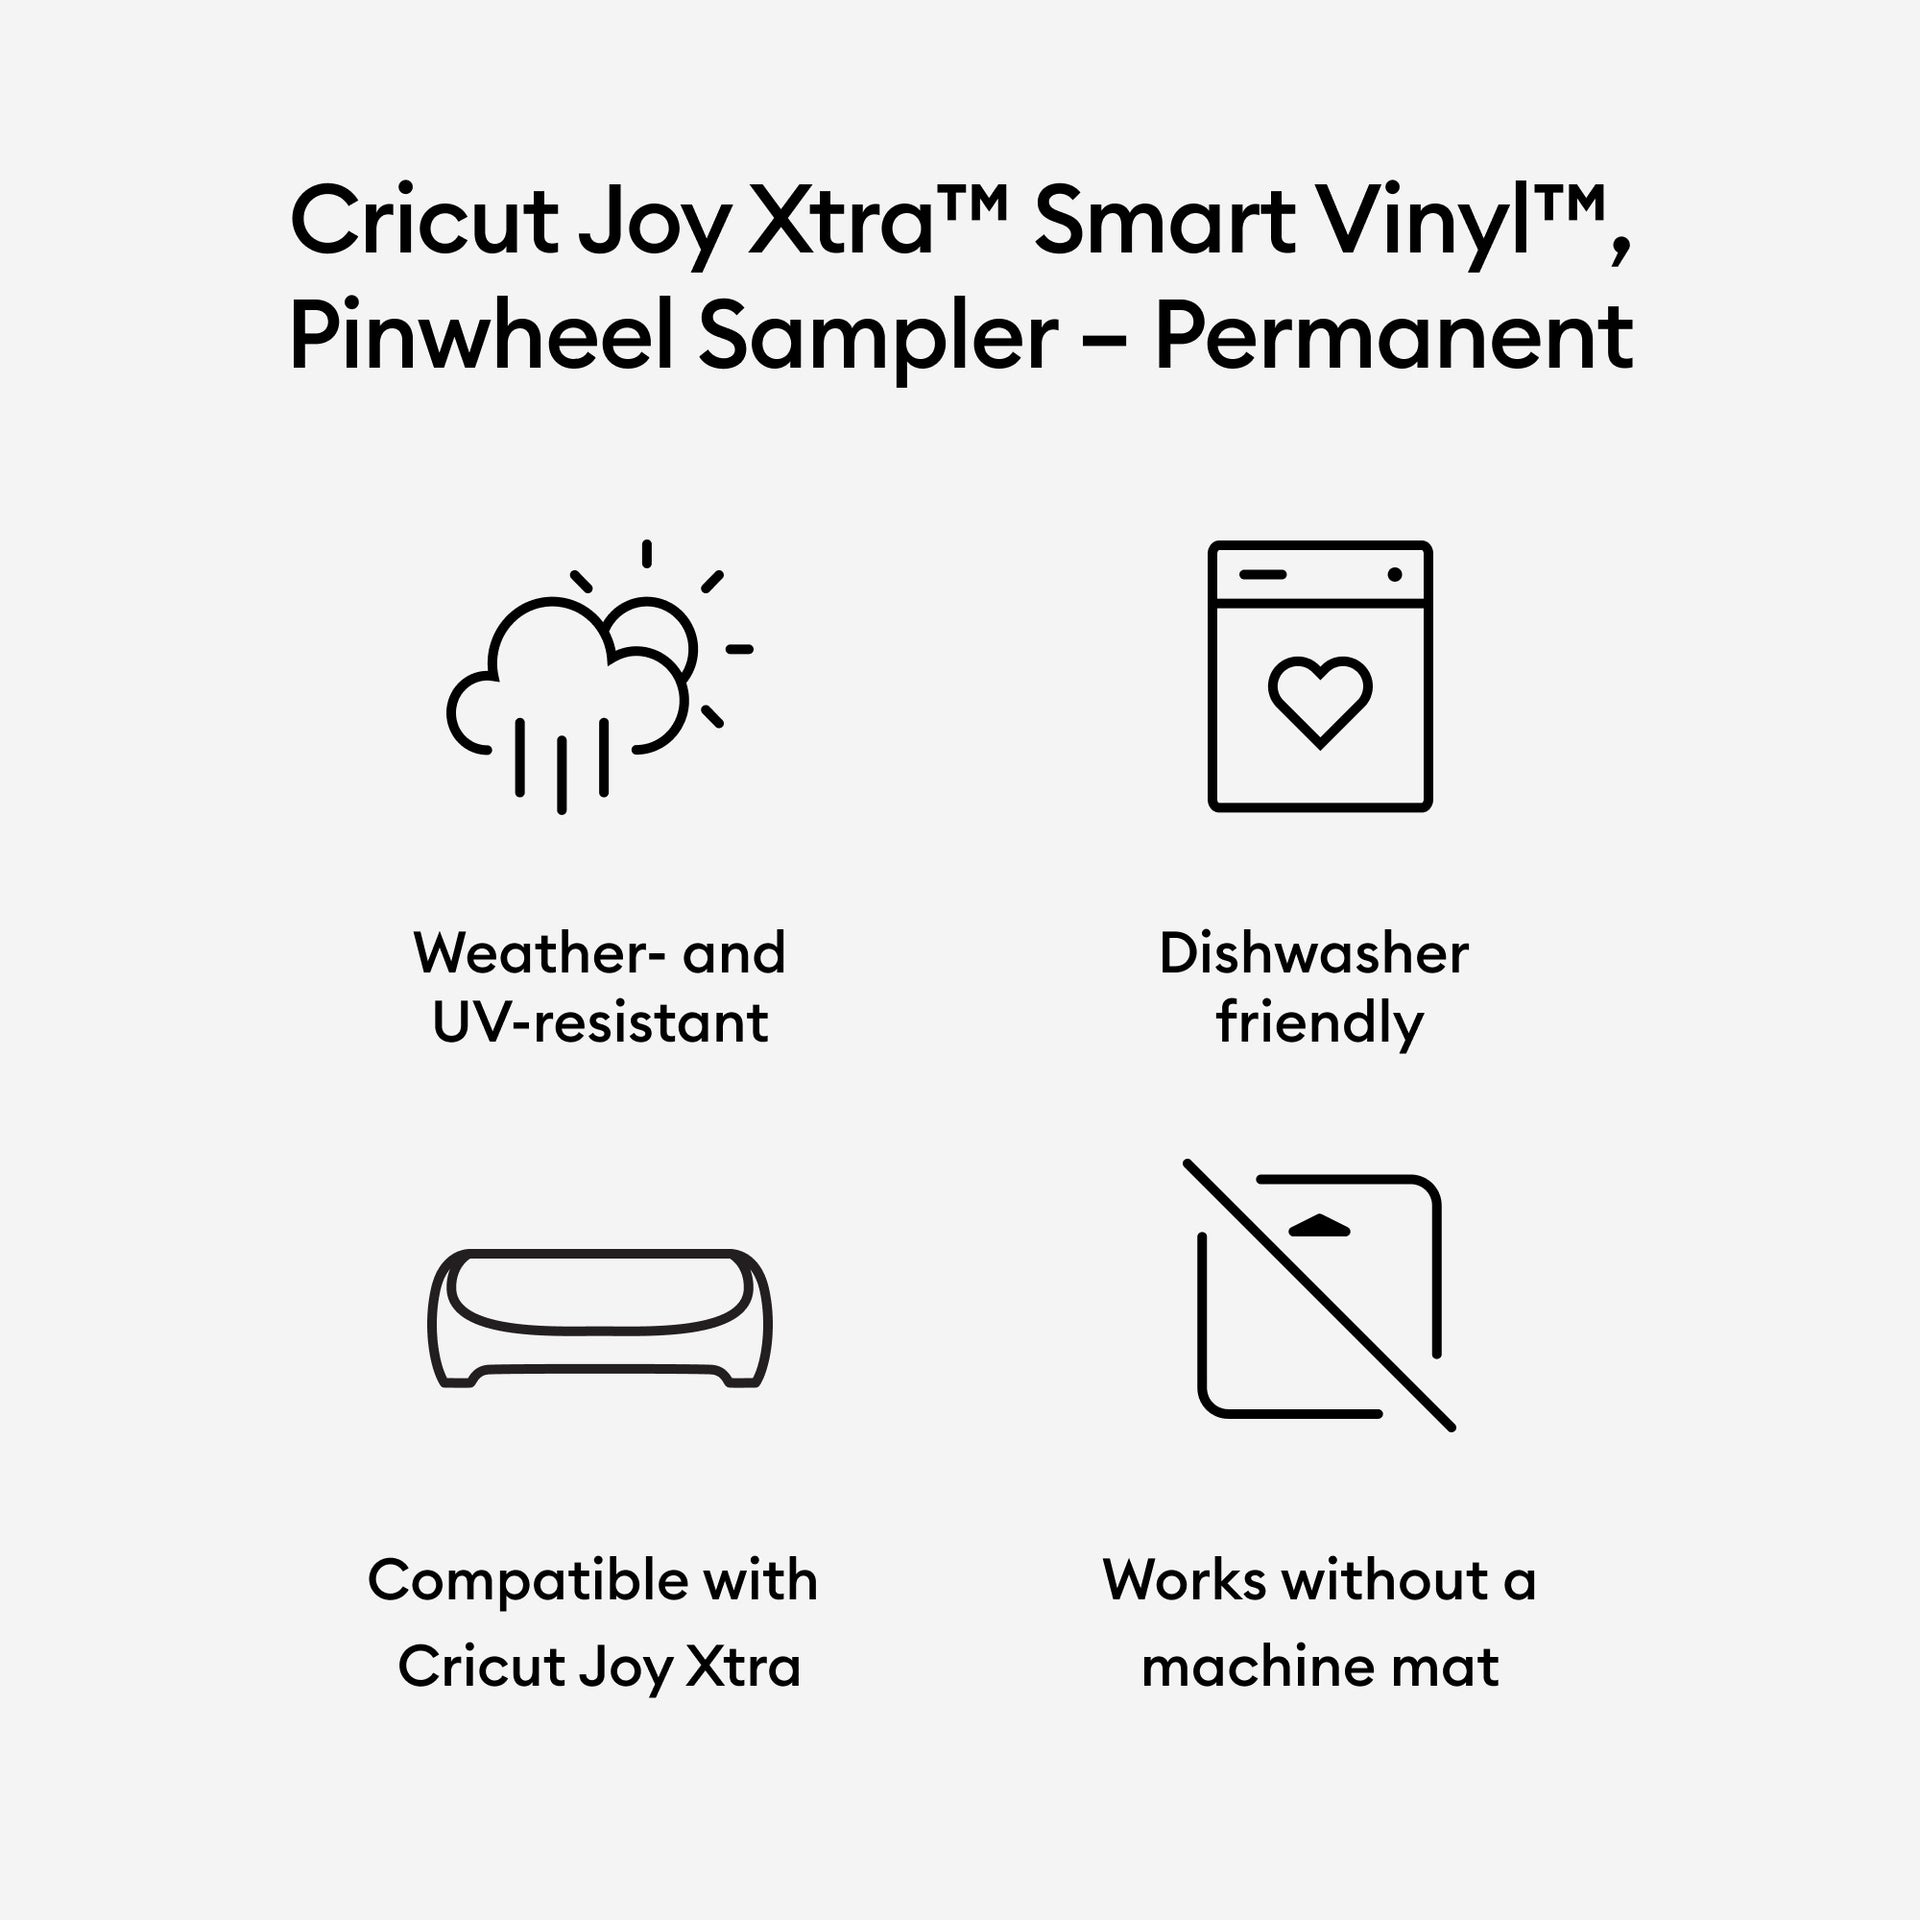 Cricut Joy Xtra Permanent Smart Vinyl Sampler- Pinwheel